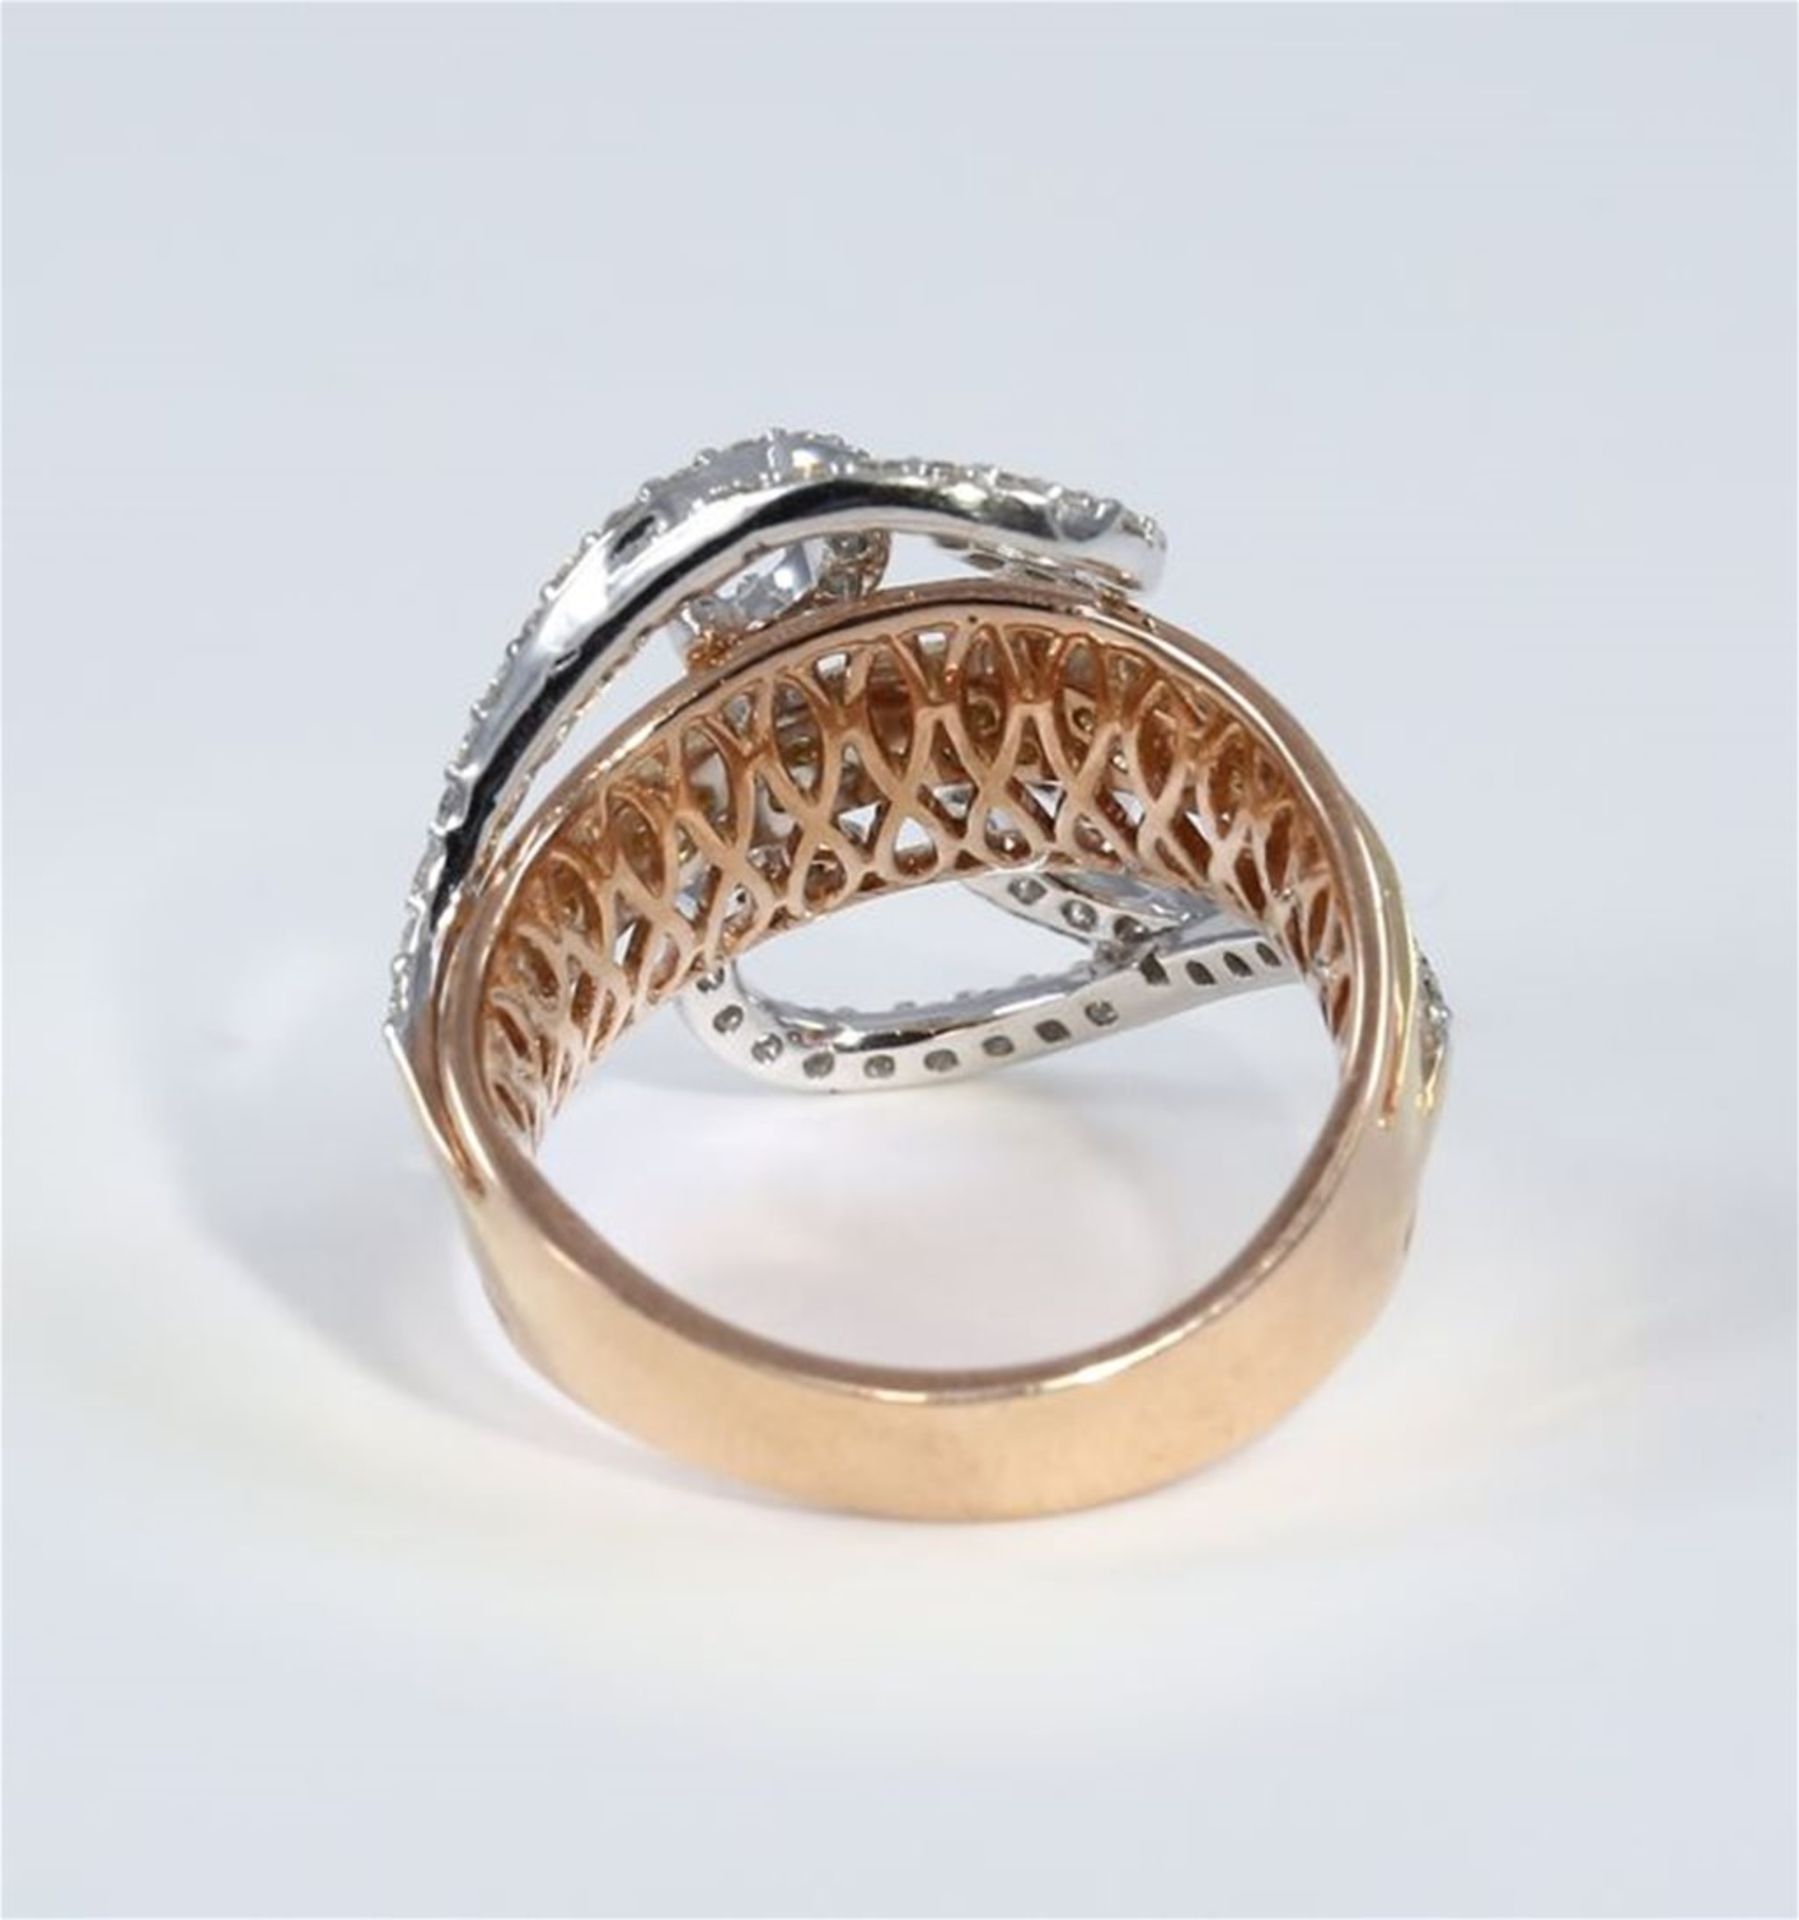 IGI Certified 18 K/750 Designer Diamond Ring - Image 3 of 10